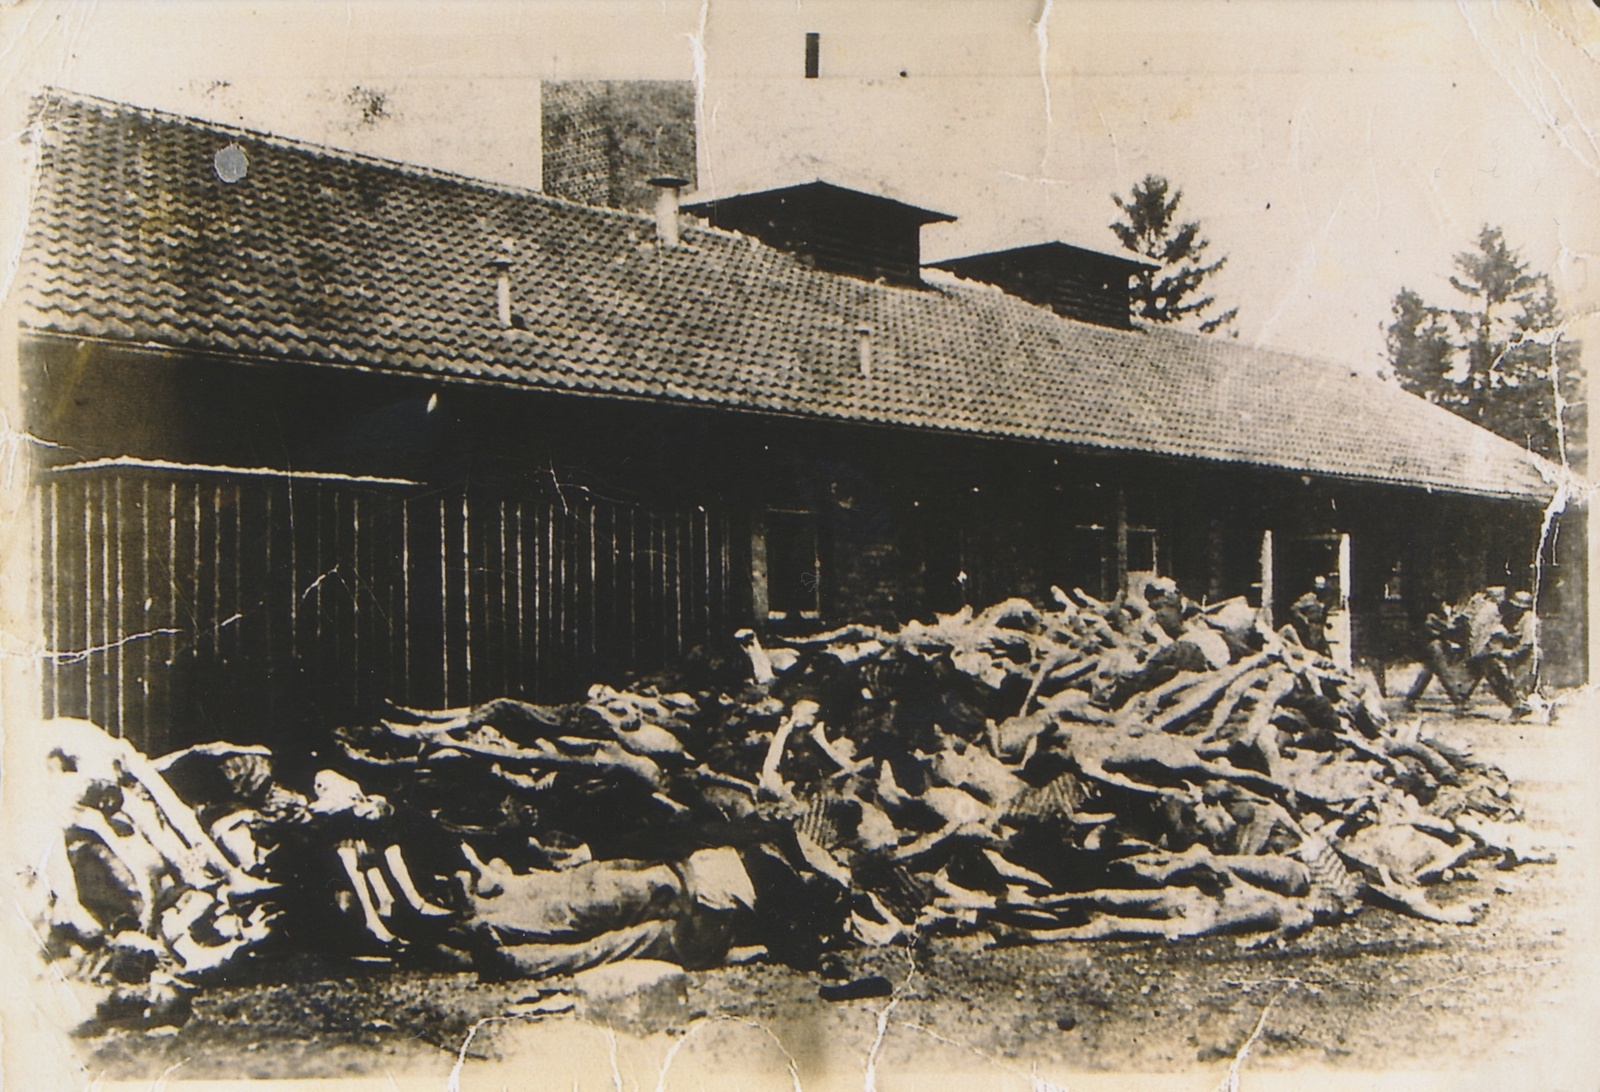 De döda staplades i högar utanför barackerna. Bilden kommer från Dachau, som var det första av nazisternas koncentrationsläger.